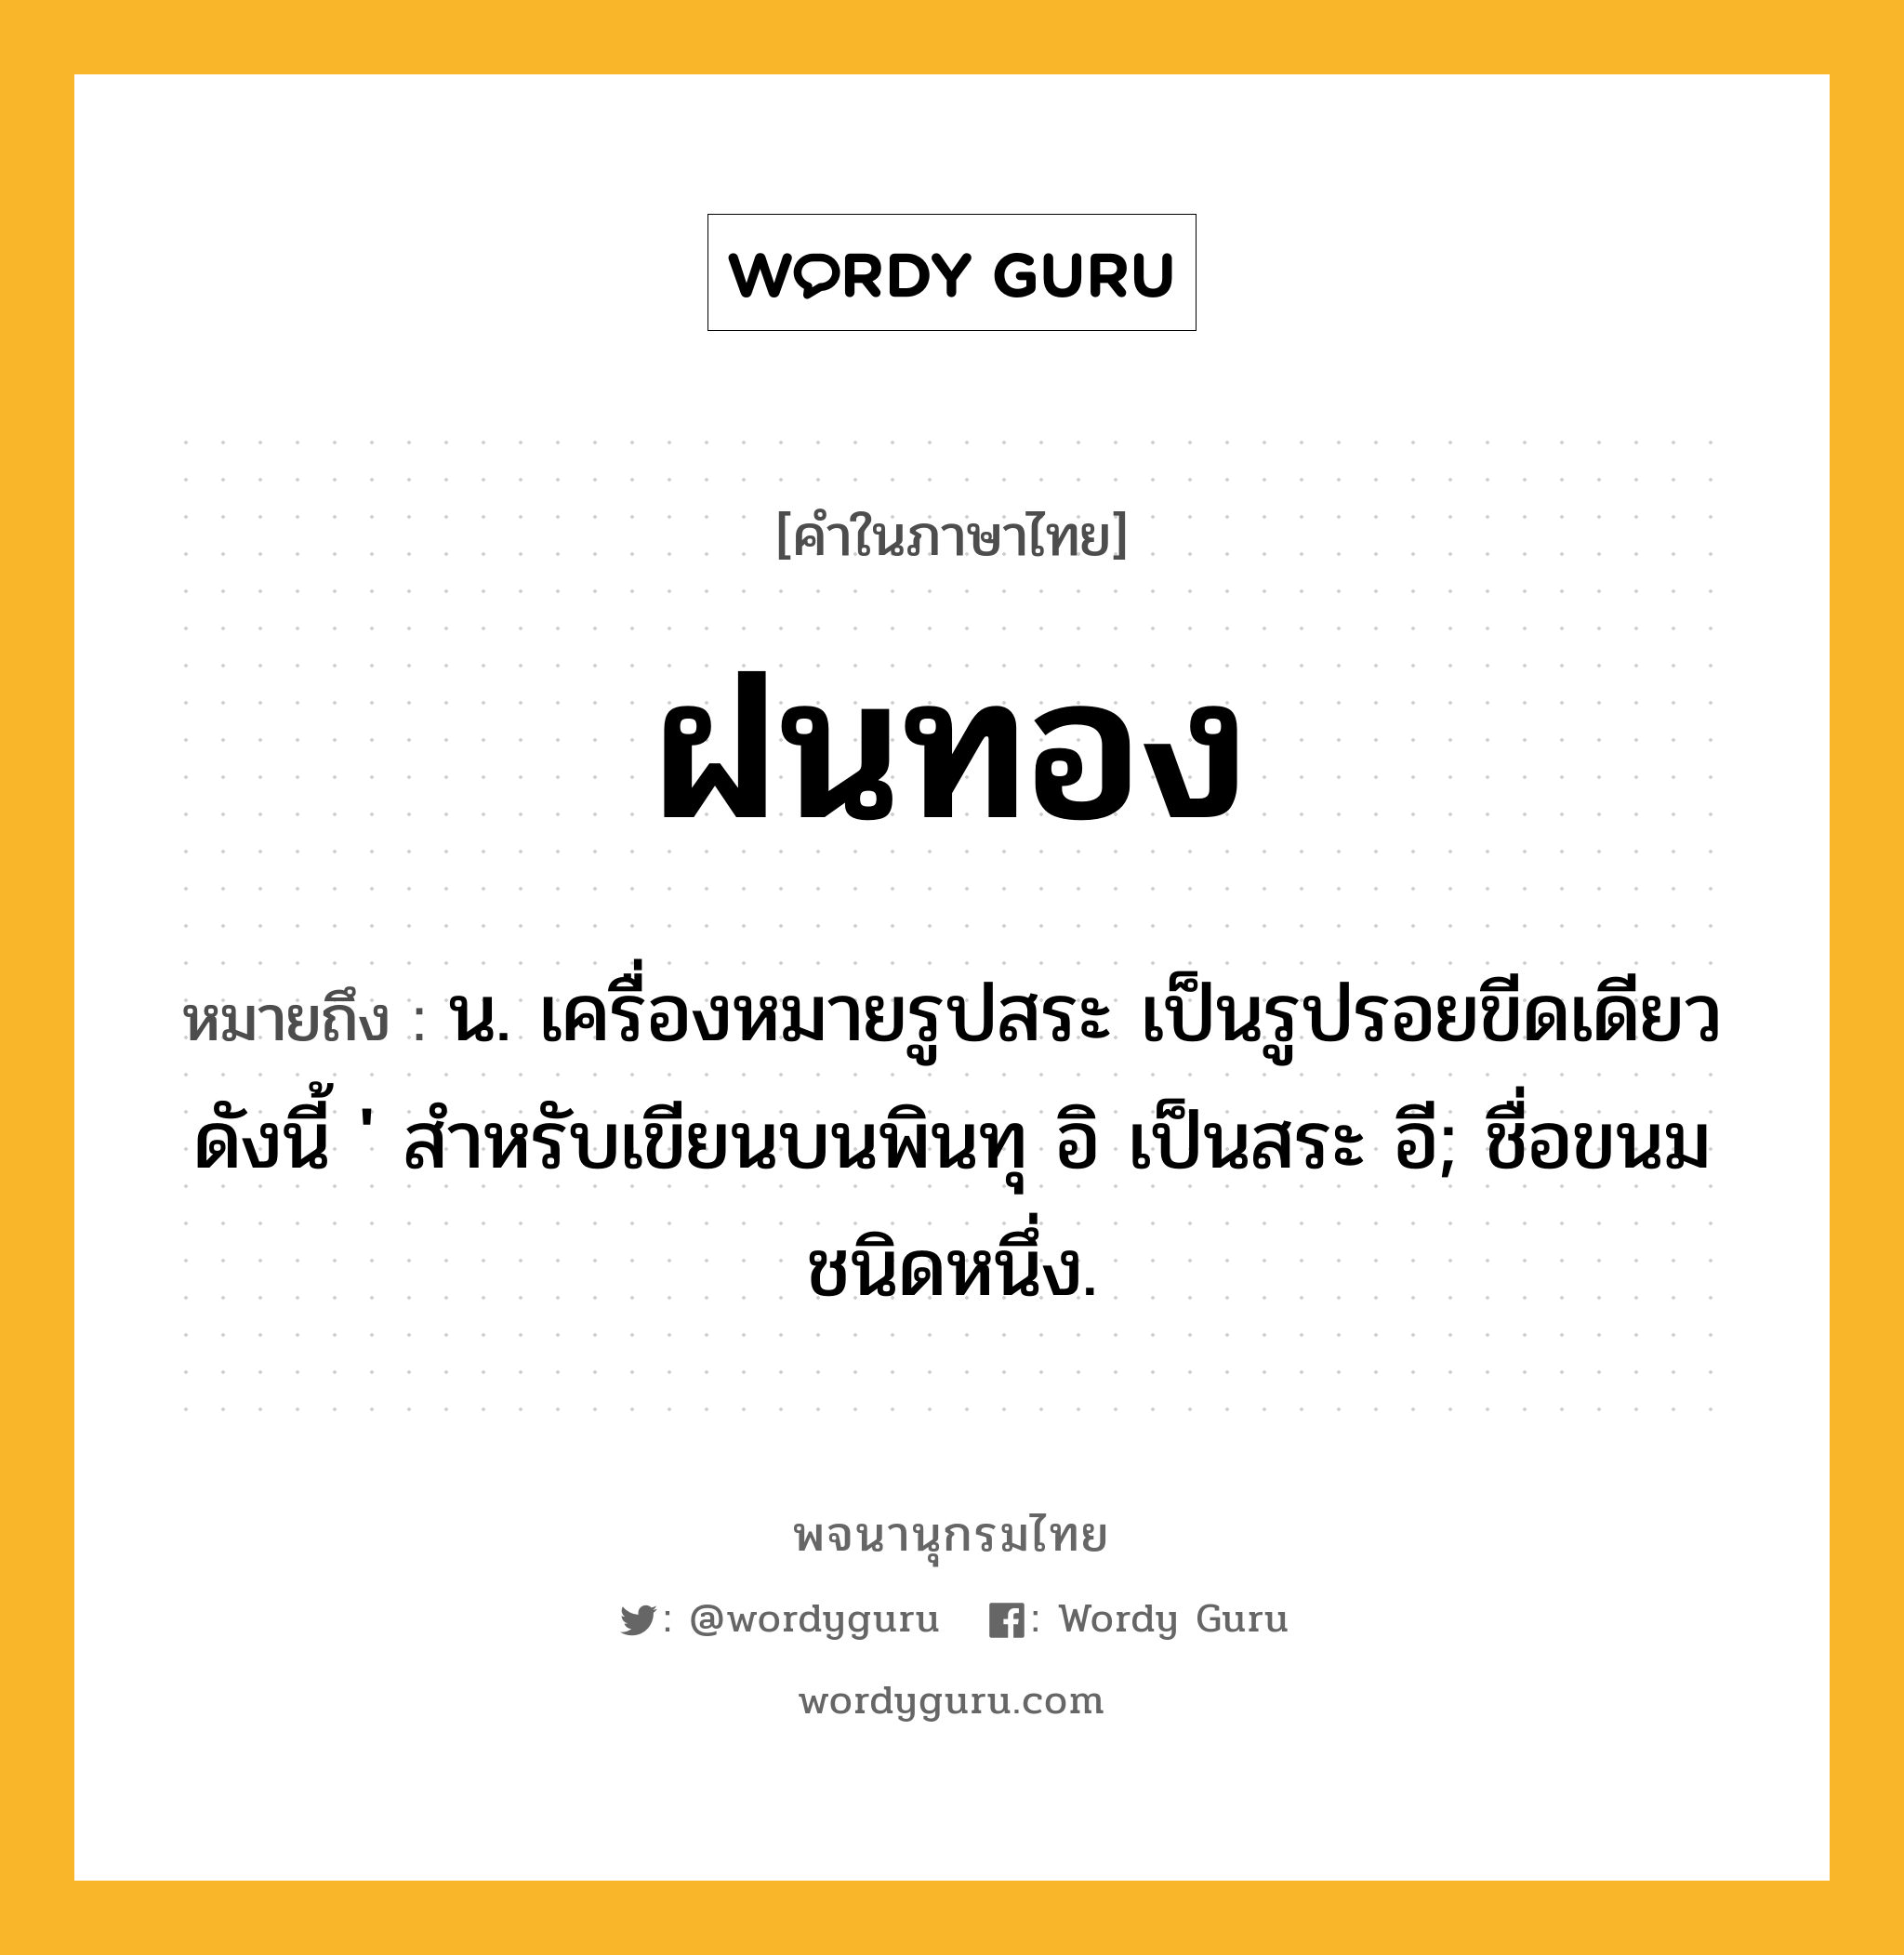 ฝนทอง ความหมาย หมายถึงอะไร?, คำในภาษาไทย ฝนทอง หมายถึง น. เครื่องหมายรูปสระ เป็นรูปรอยขีดเดียวดังนี้ ' สําหรับเขียนบนพินทุ อิ เป็นสระ อี; ชื่อขนมชนิดหนึ่ง.